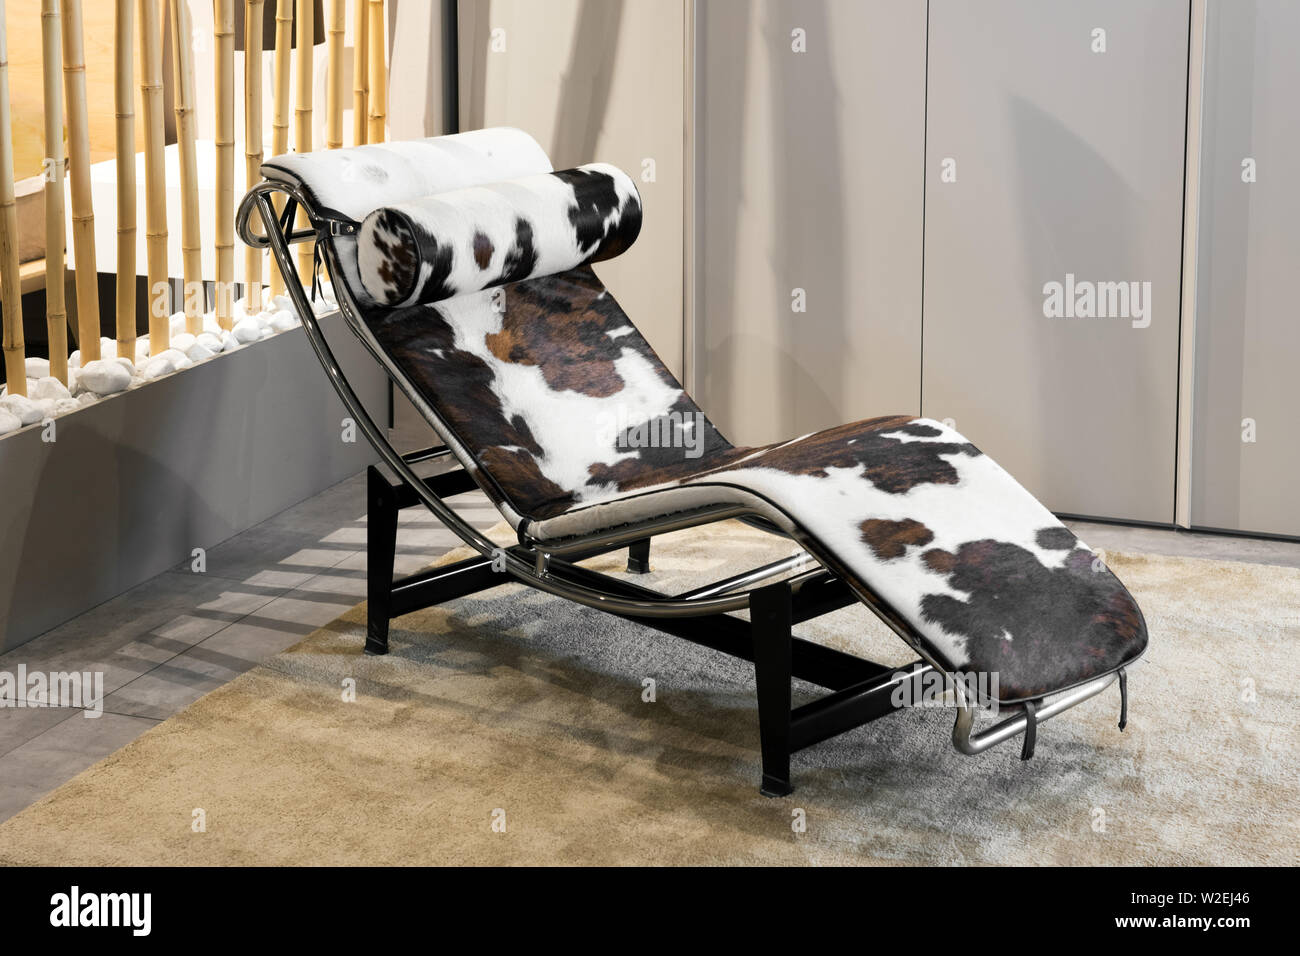 Élégante et moderne, cette chaise longue courbe avec peau d'animal sur un cadre métallique à l'intérieur sur un tapis dans une élégante maison avec décor marron beige neutre Banque D'Images